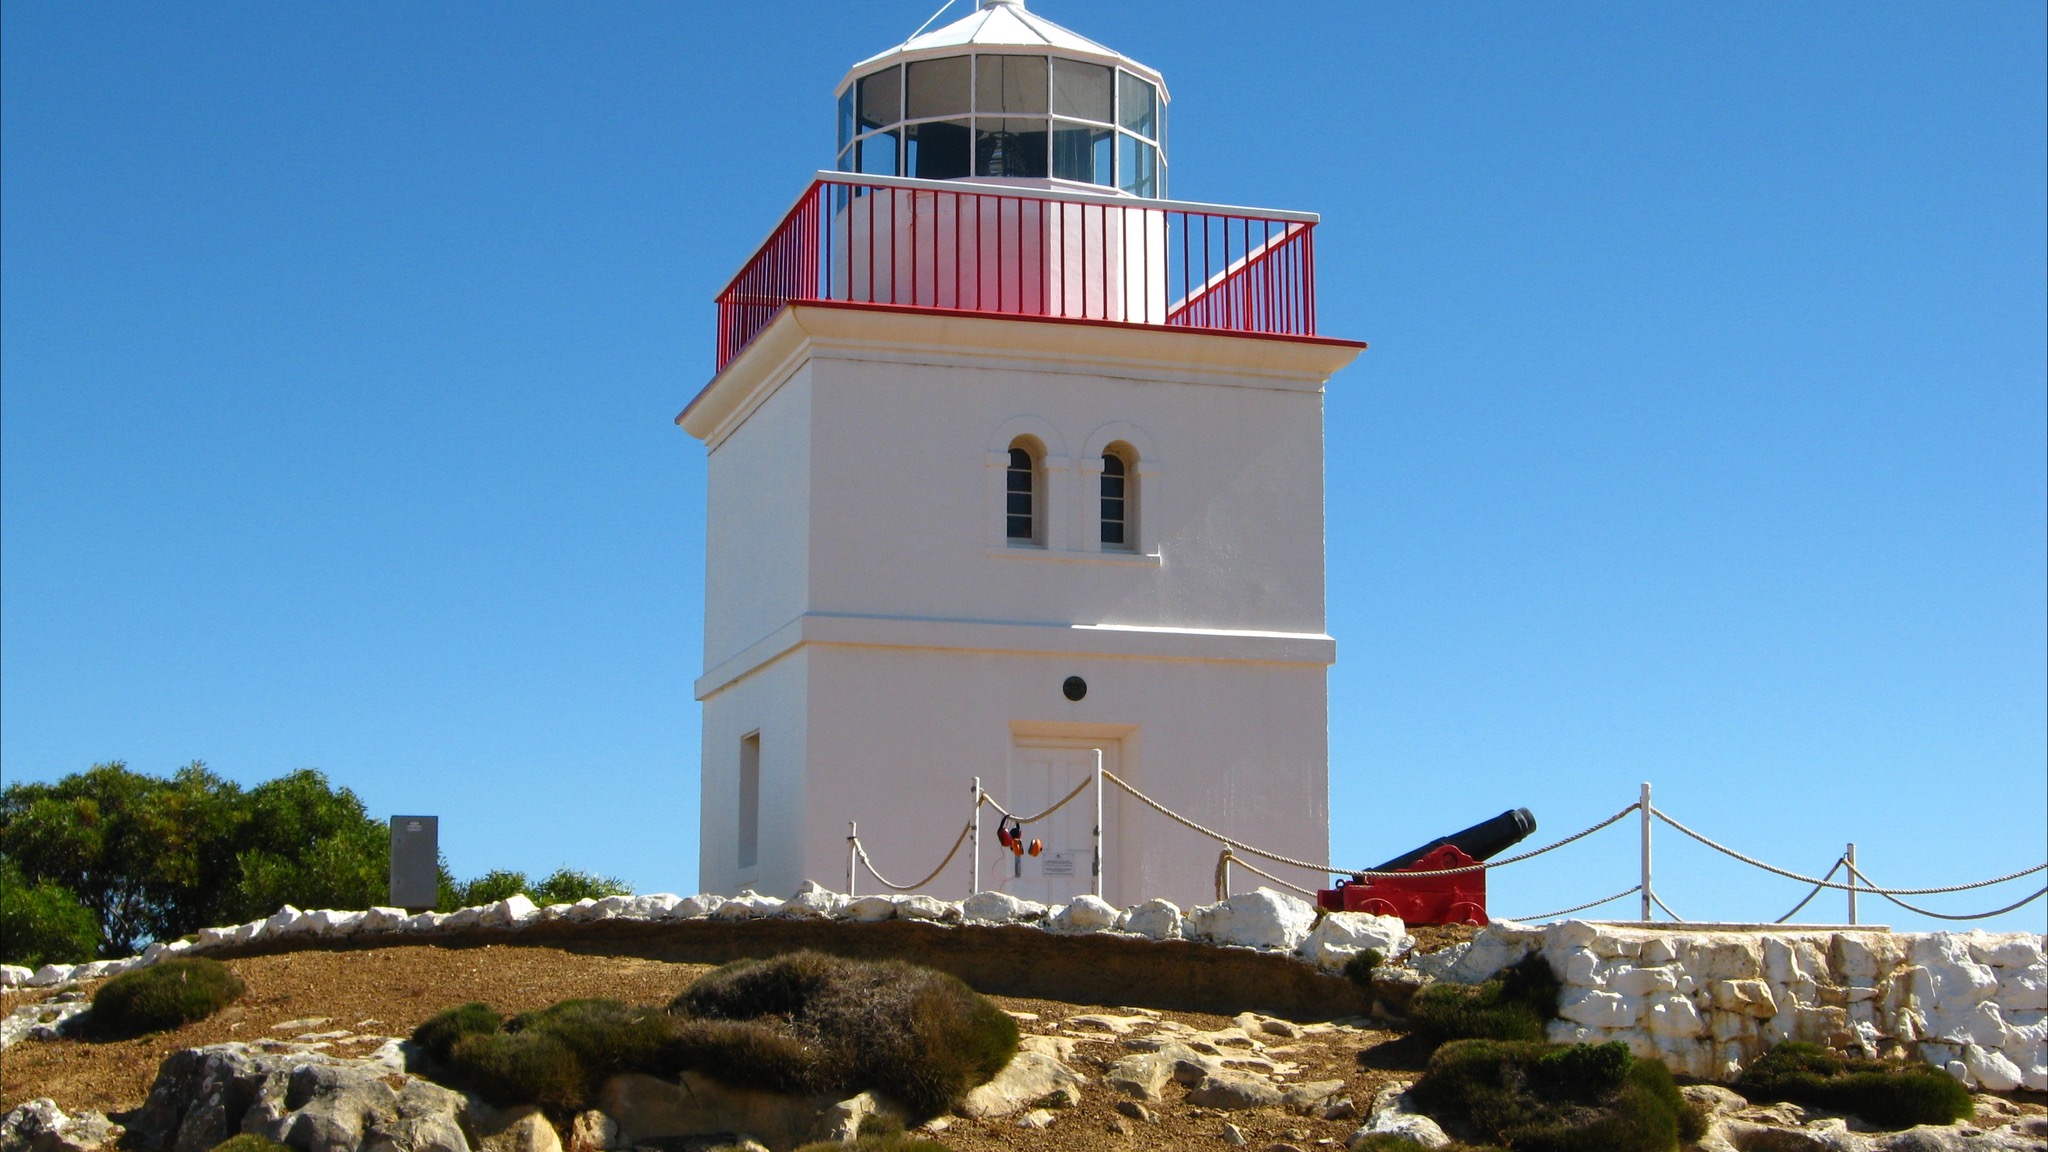 Cape Borda Lighthouse Keepers Heritage Accommodation - Australia Accommodation